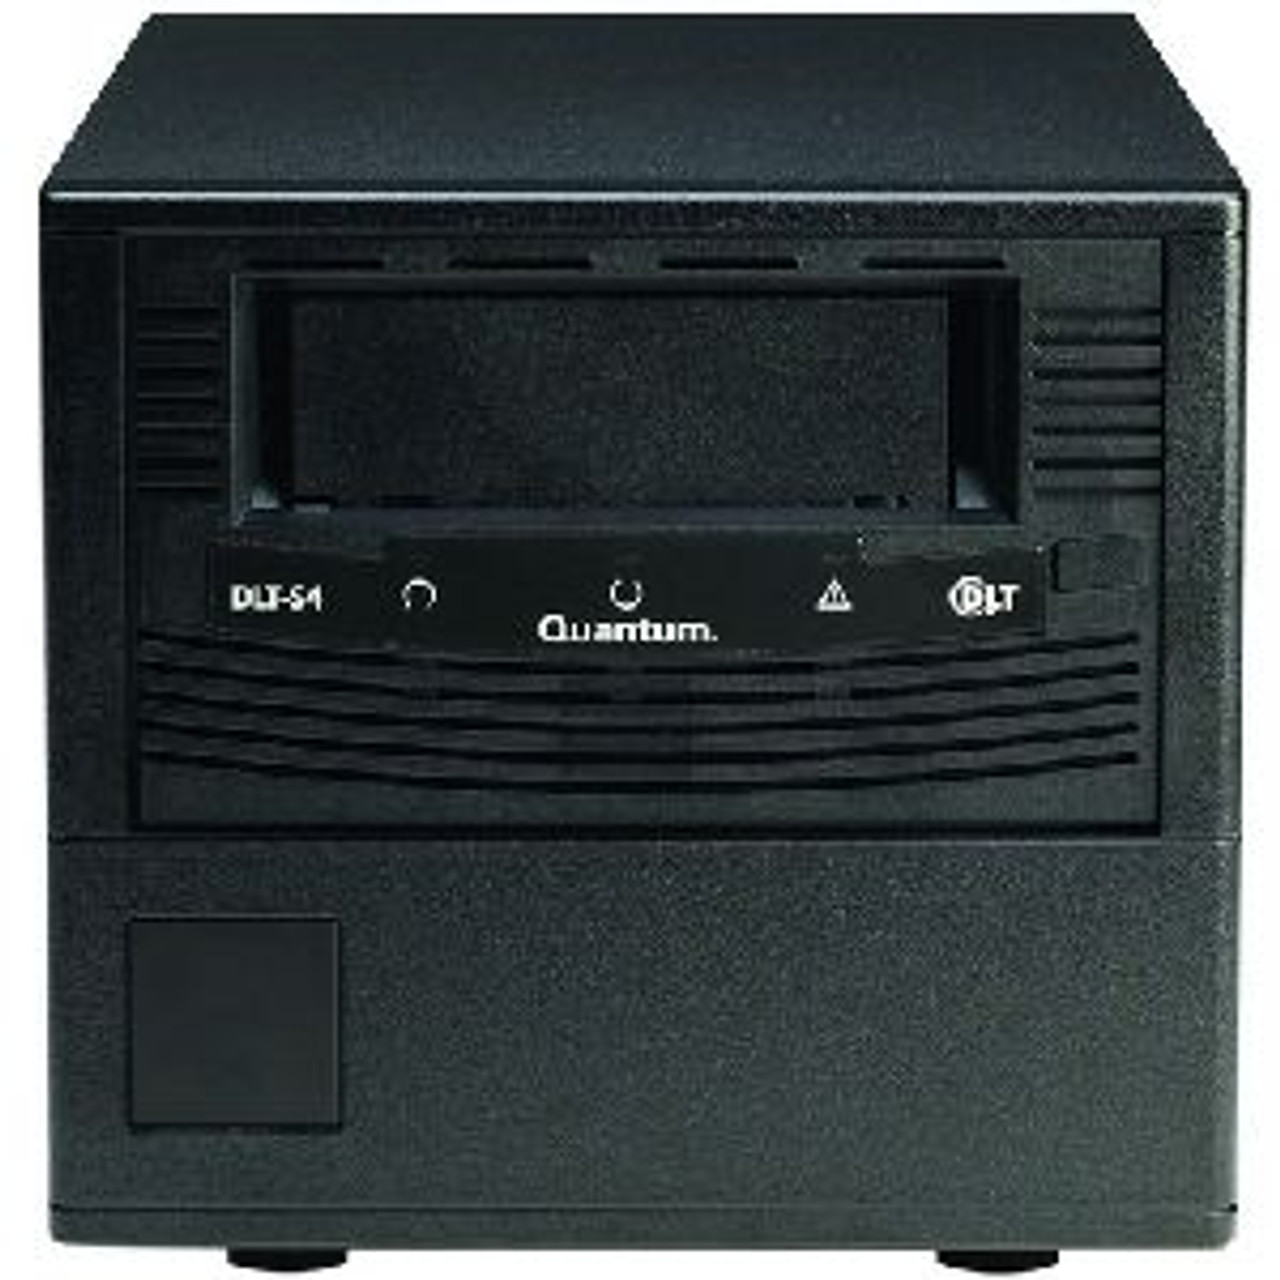 TC-S45BT-YF - Quantum DLT-S4 Tape drive - 800GB (Native)/1.6TB (Compressed) - Desktop